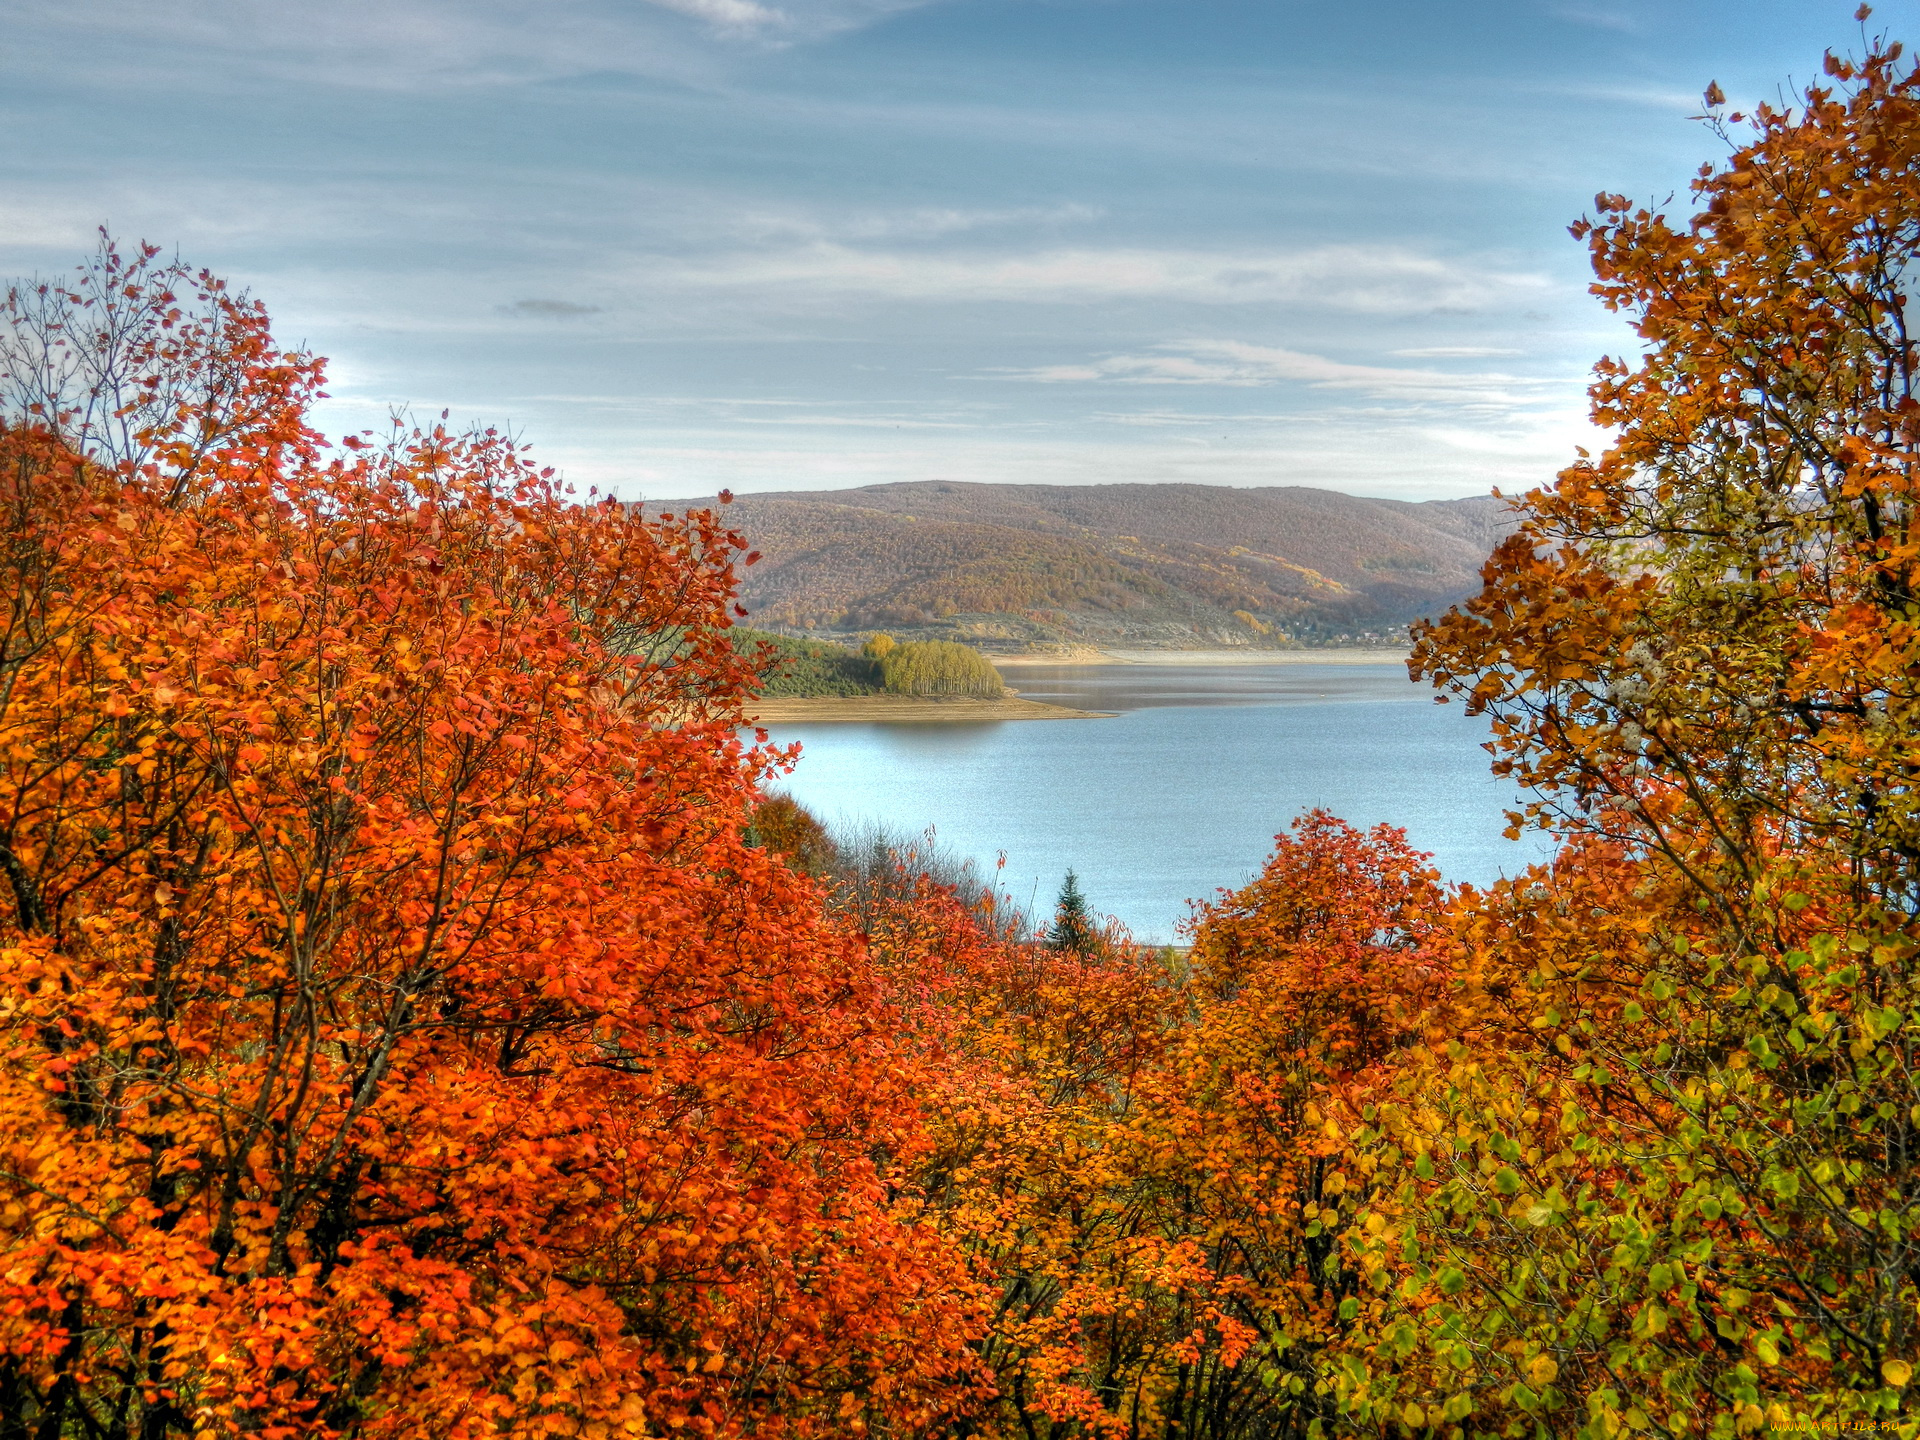 македония, природа, реки, озера, осень, река, деревья